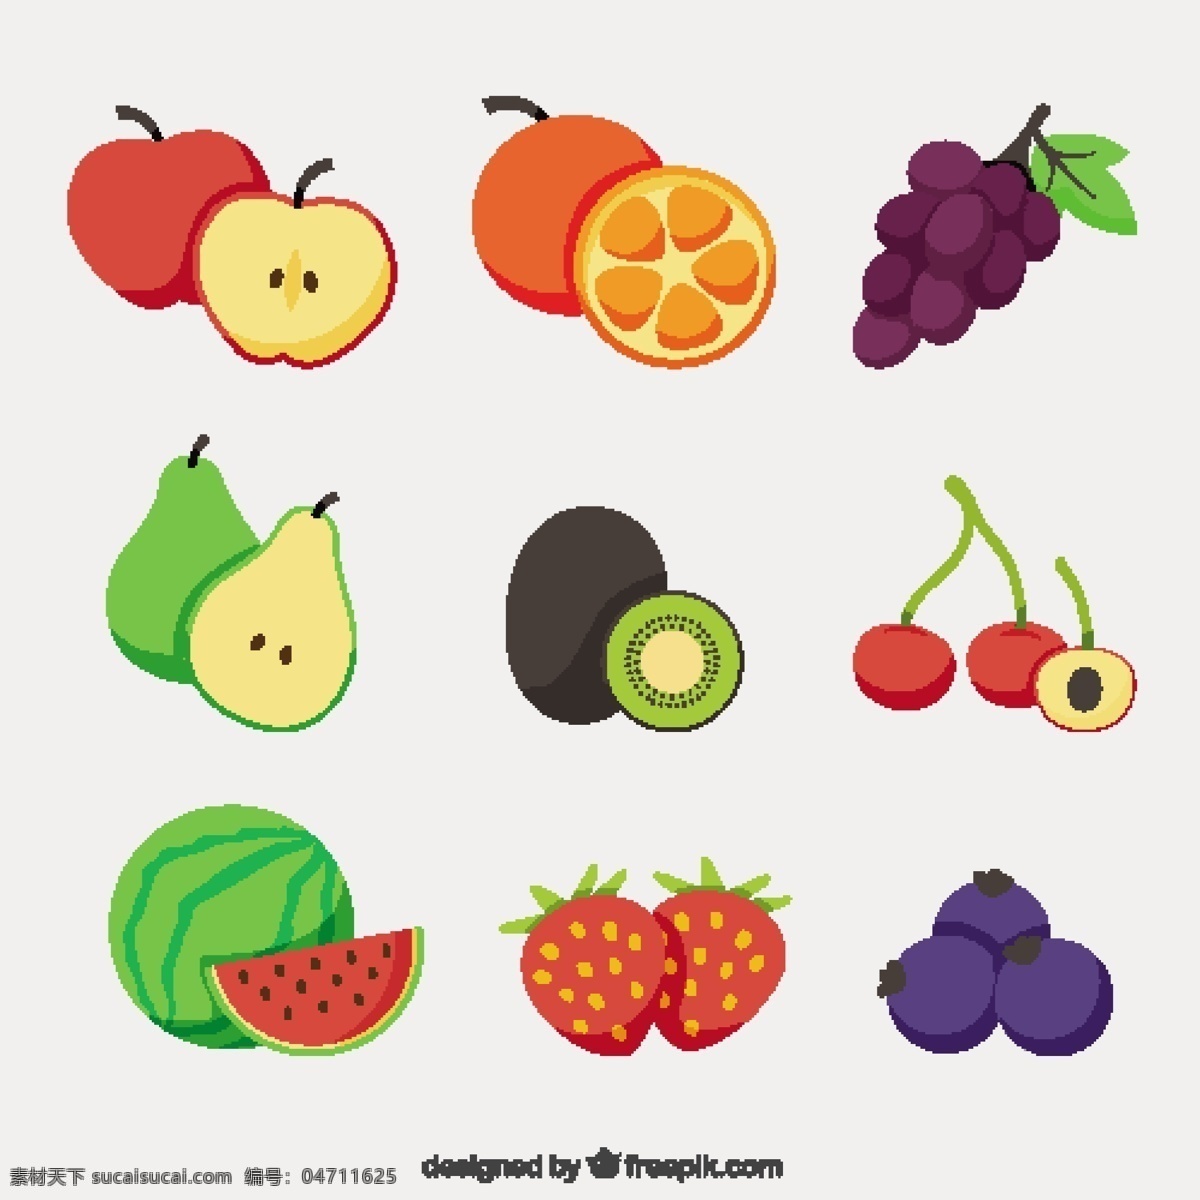 平面设计 中 美味 水果 选择 食品 夏季 颜色 橙子 苹果 平板 天然 健康 草莓 吃 健康食品 西瓜 葡萄 饮食 营养 樱桃